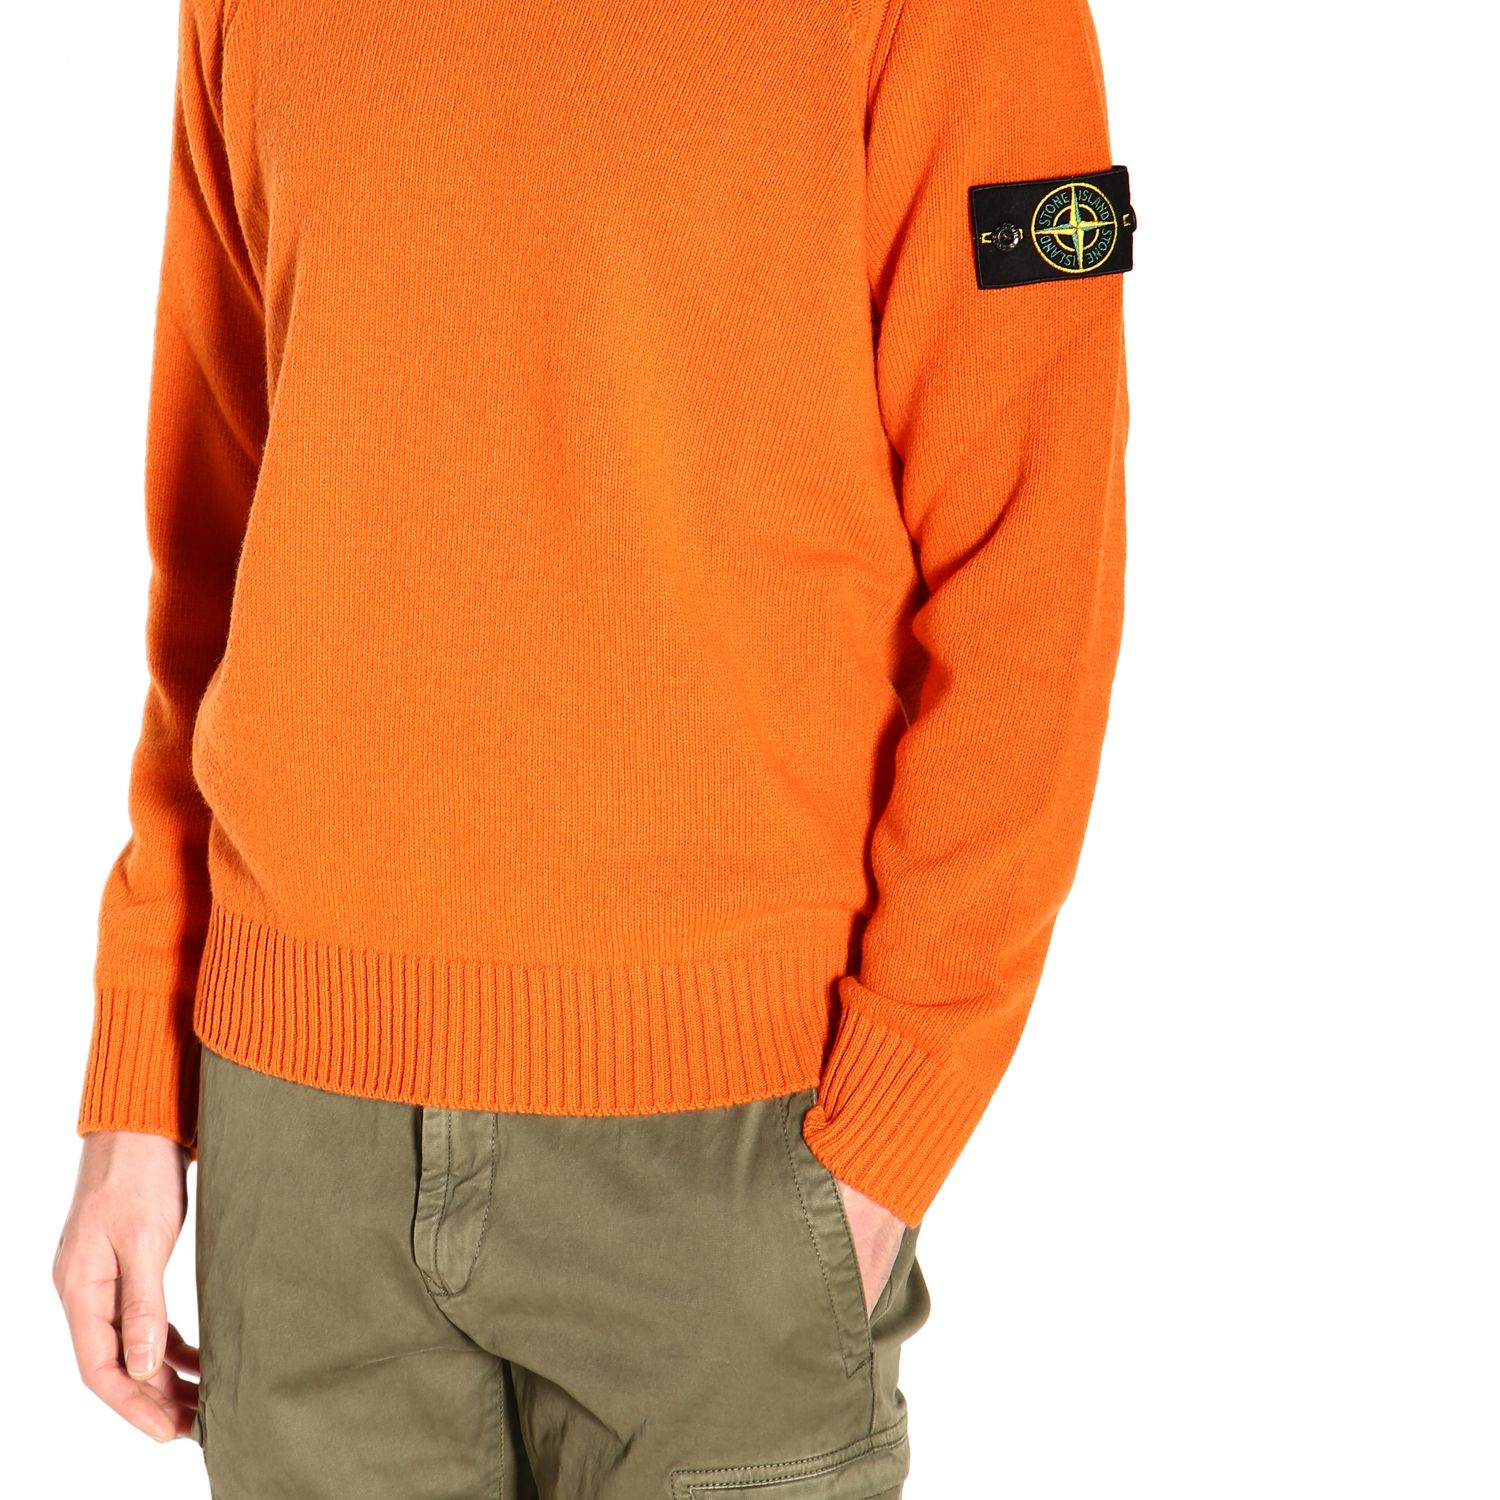 Razernij heel Oprecht STONE ISLAND: sweater for man - Orange | Stone Island sweater 552A3 online  on GIGLIO.COM